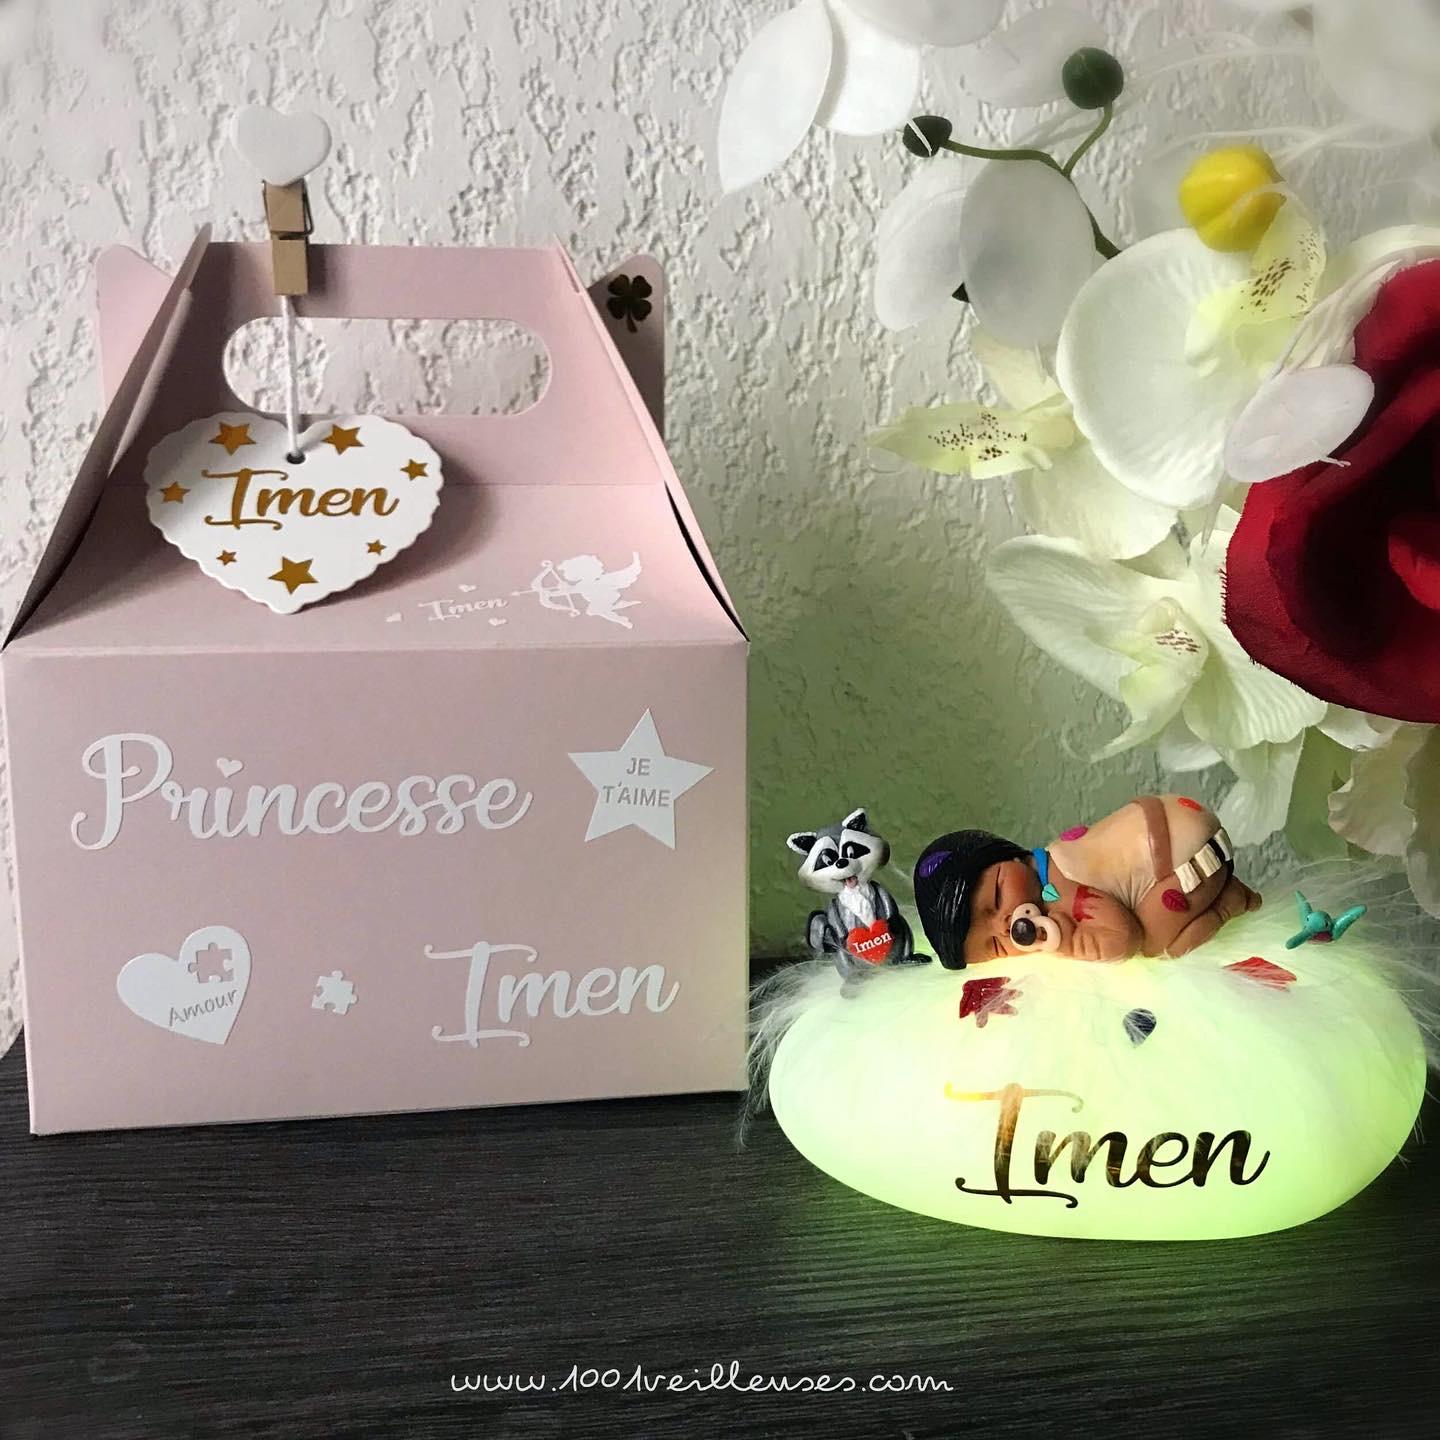 Veilleuse de nuit personnalisée en forme de galet lumineux avec un bébé fille sur le thème de Pocahontas, avec une boîte cadeau personnalisée, vue de face